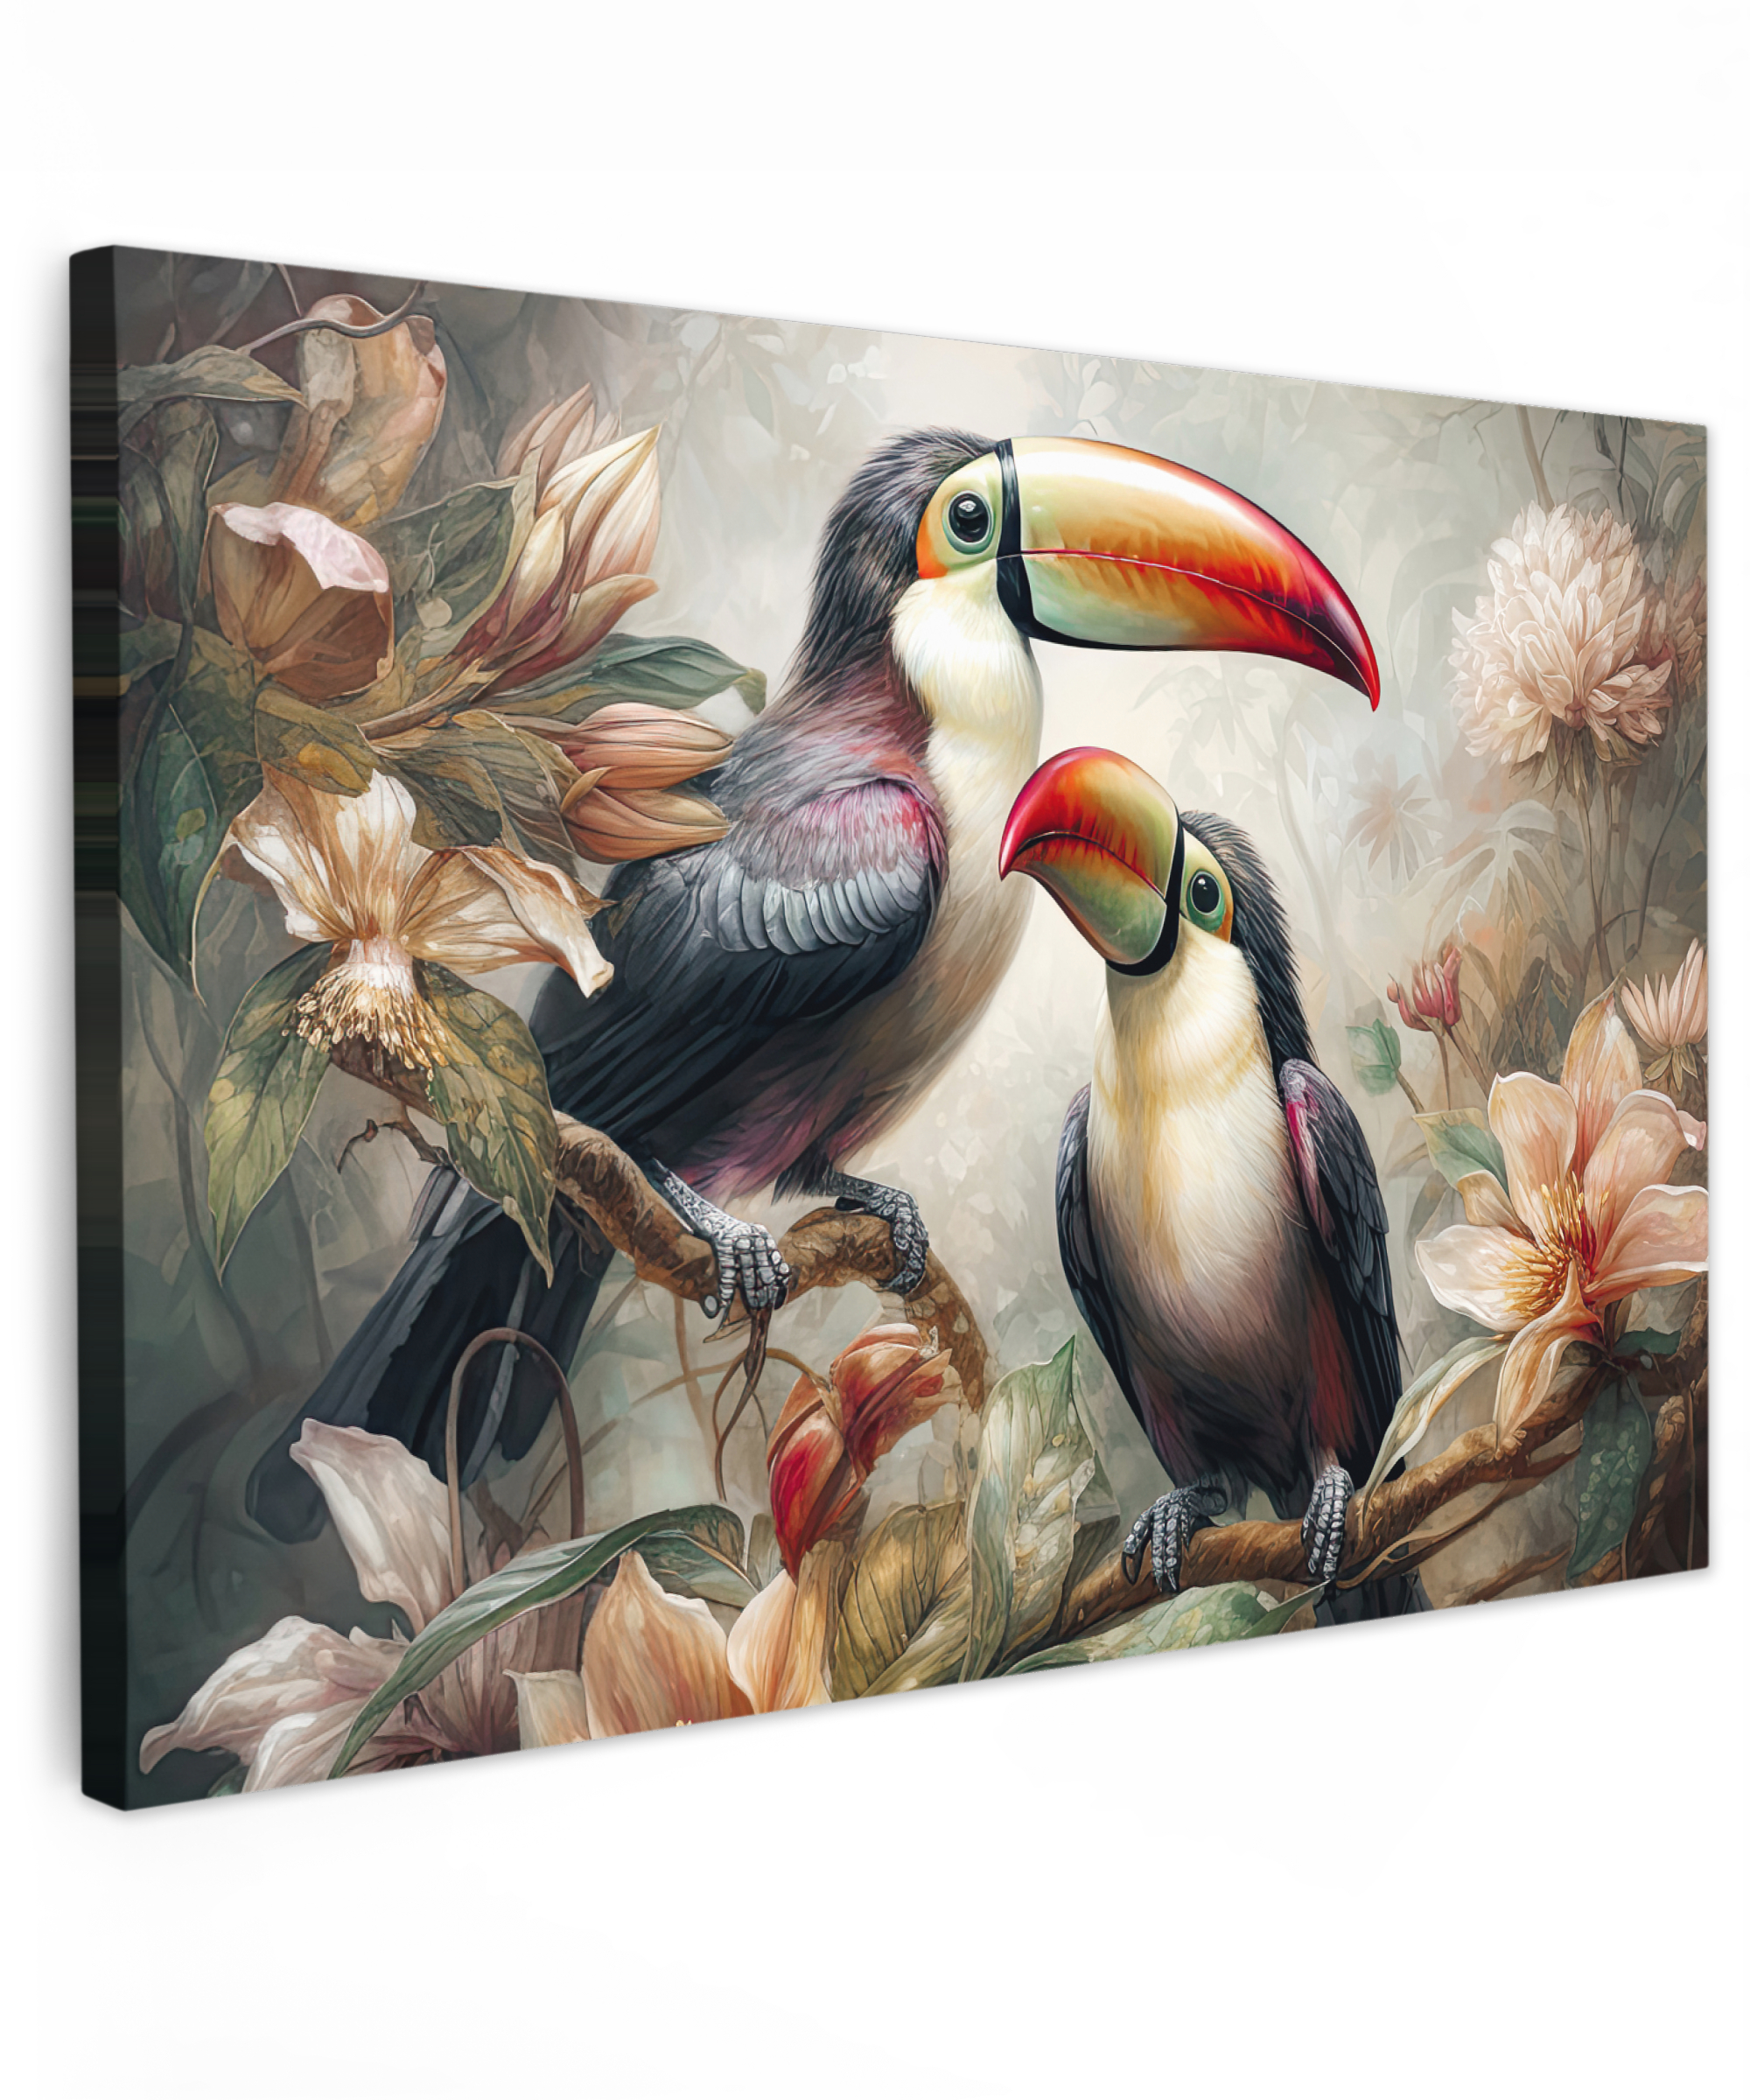 Tableau sur toile - Toucan - Oiseaux - Fleurs - Jungle